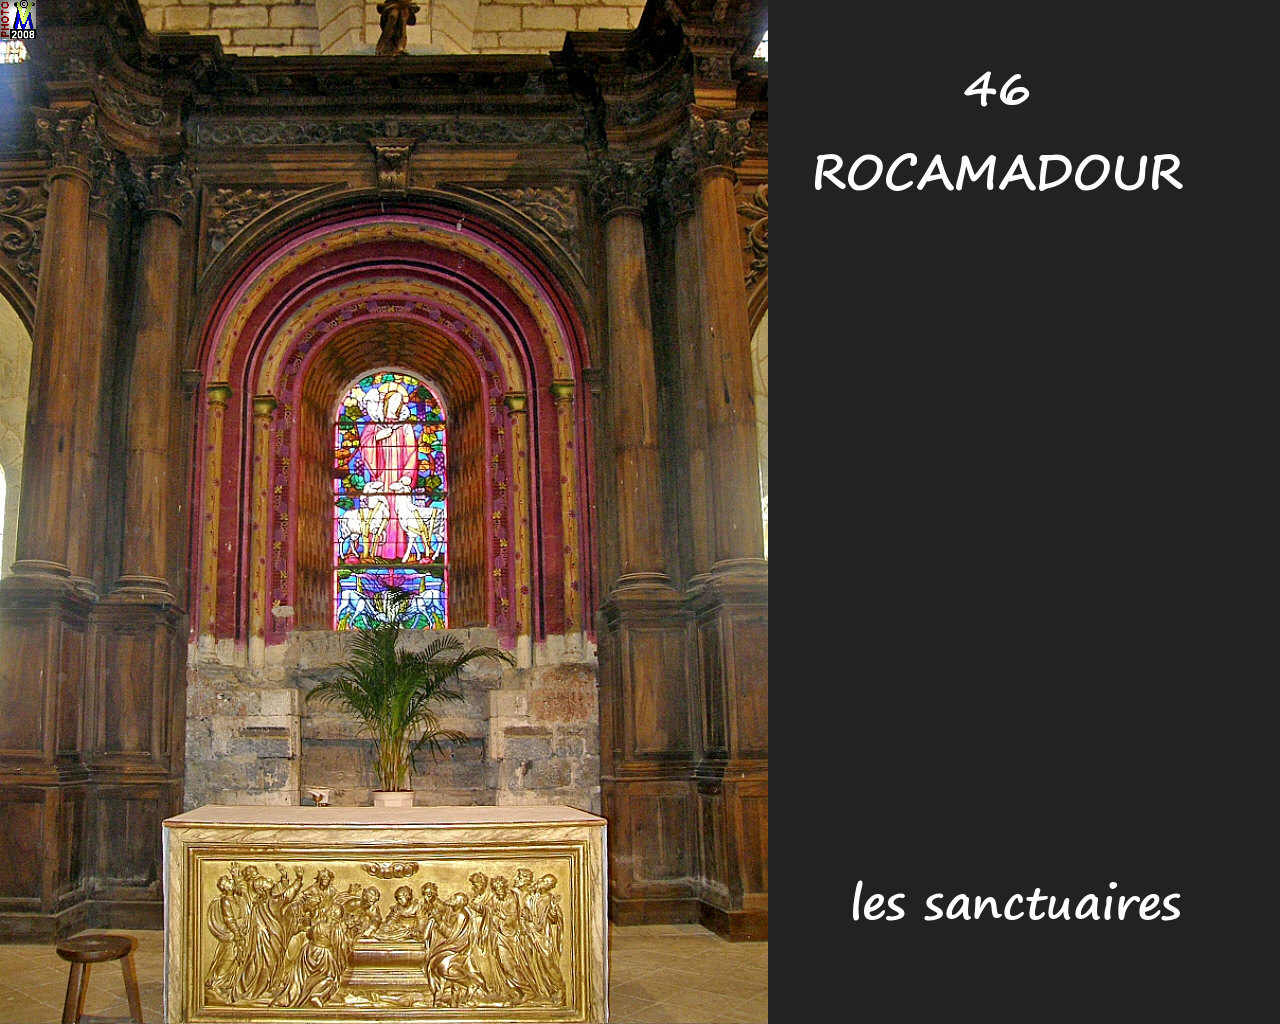 46ROCAMADOUR_sanctuaires_702.jpg